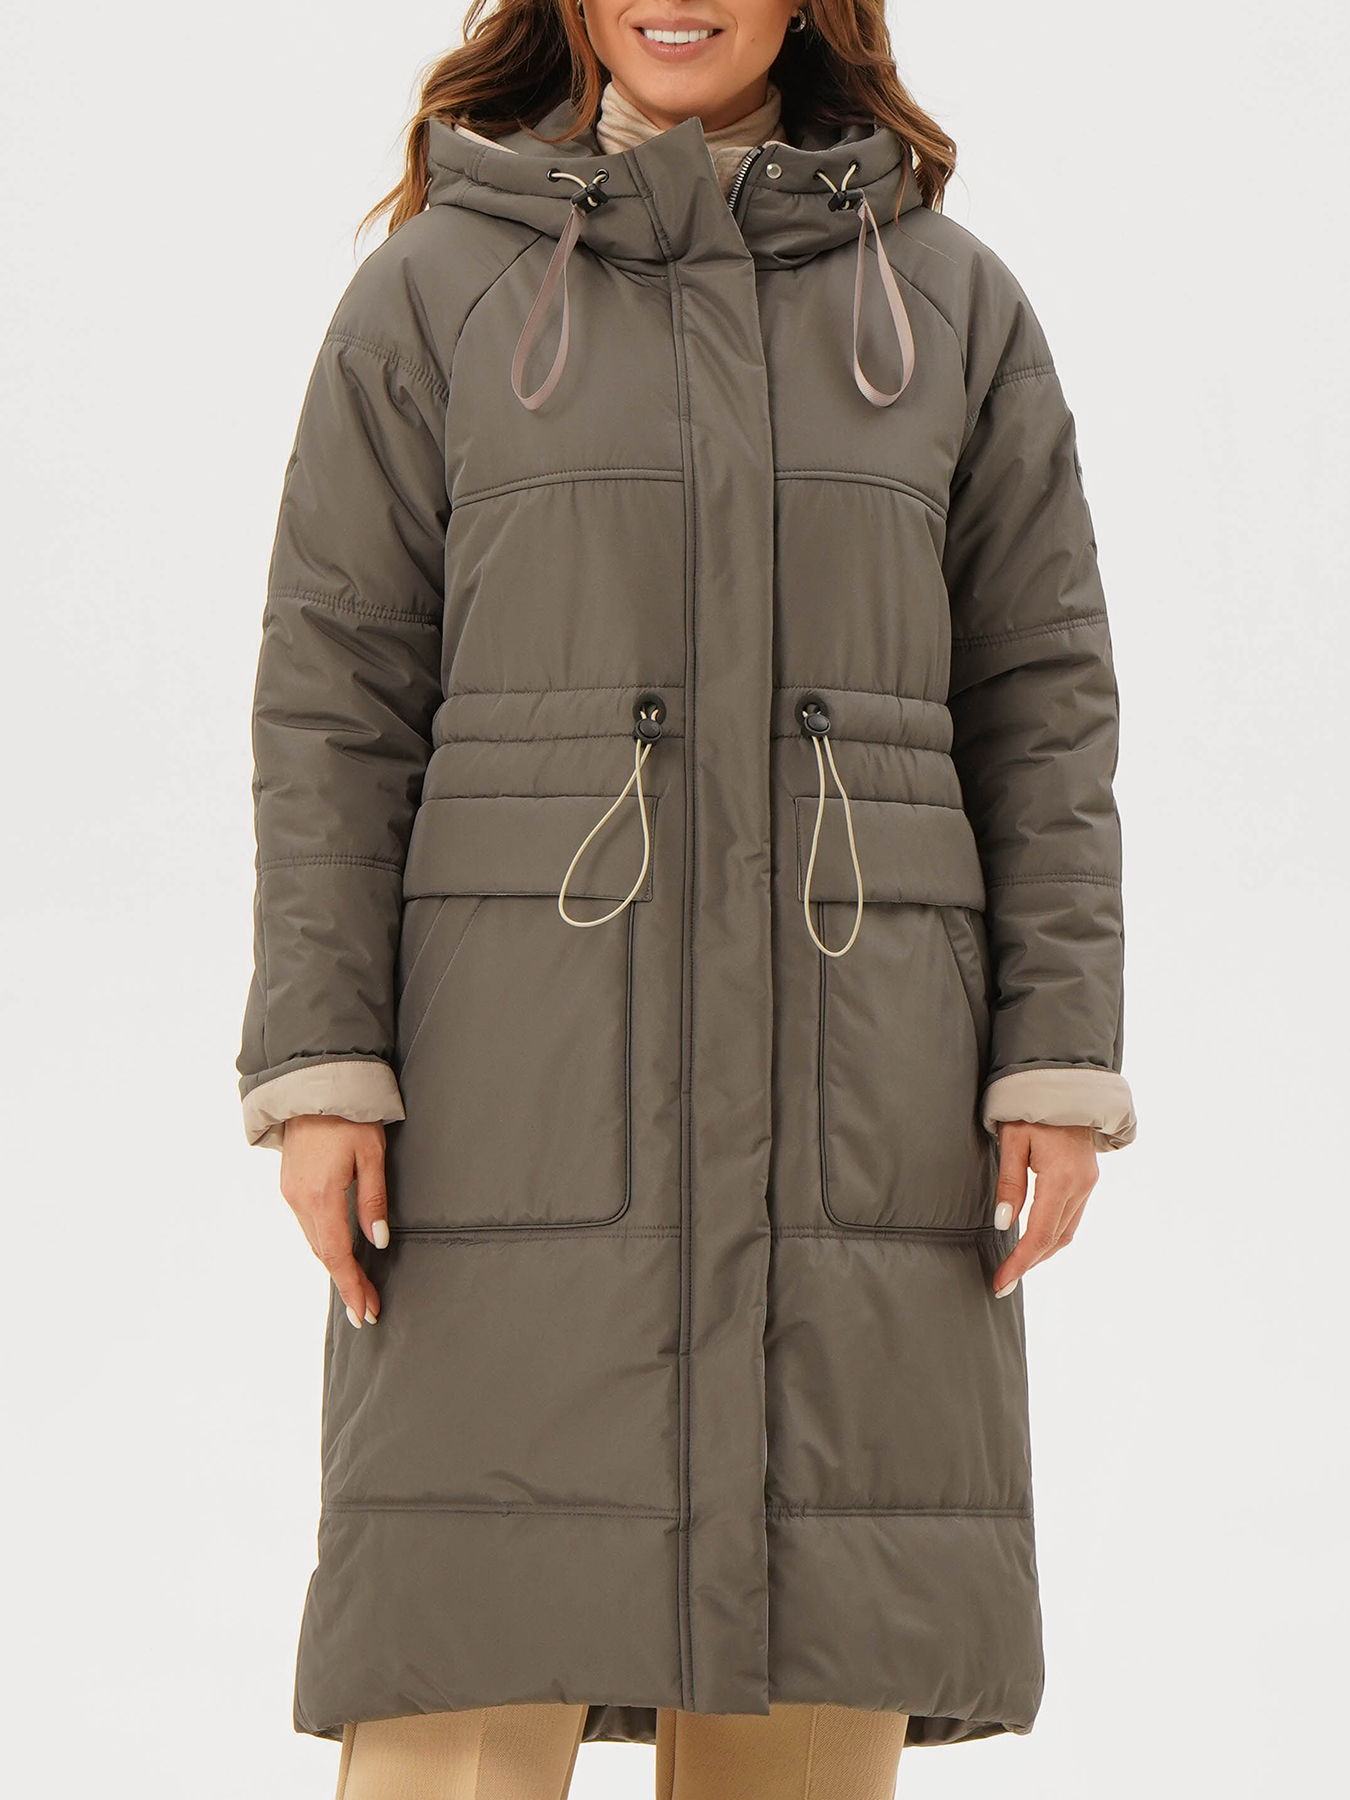 Пальто зимнее Maritta 433583-021, цвет хаки, размер 46